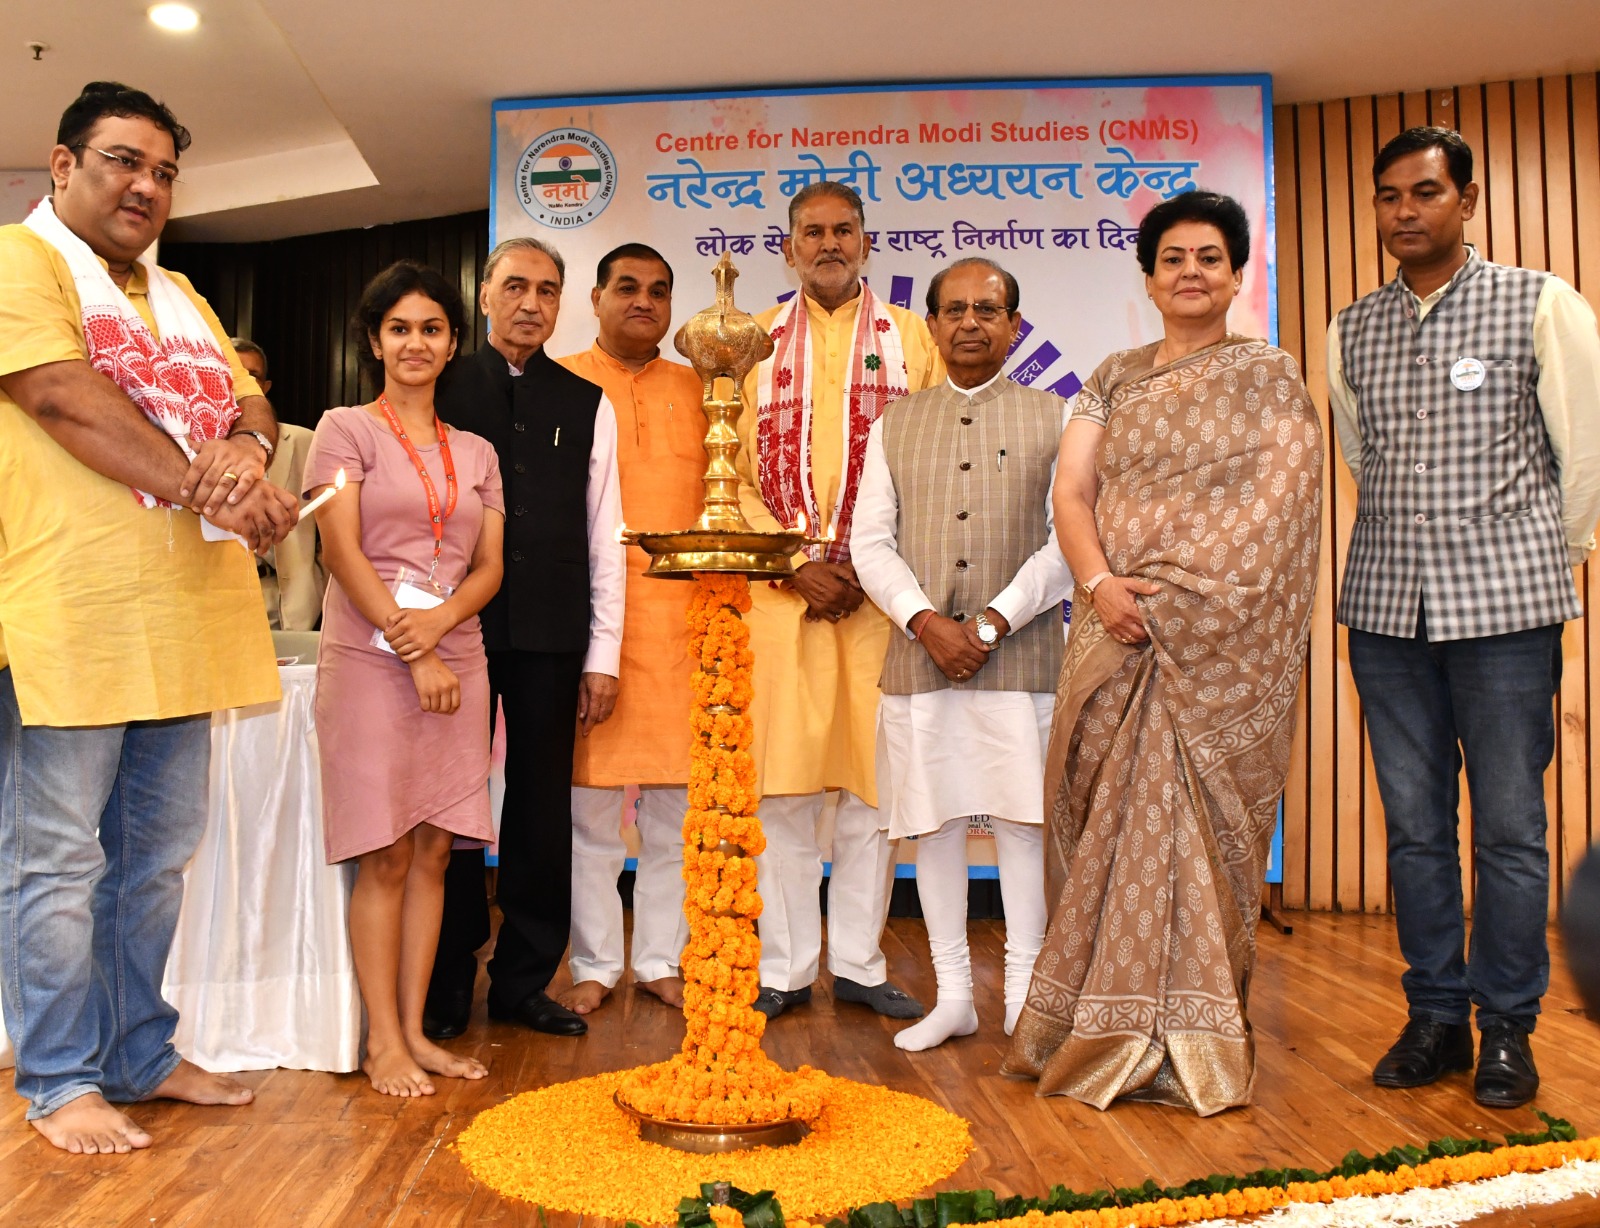 नरेंद्र मोदी अध्ययन केंद्र ने प्रधानमंत्री नरेंद्र मोदी जी का जन्मदिन धूमधाम से मनाया संगोष्ठी, पुस्तक विमोचन एवं पुरस्कार वितरण आयोजन।